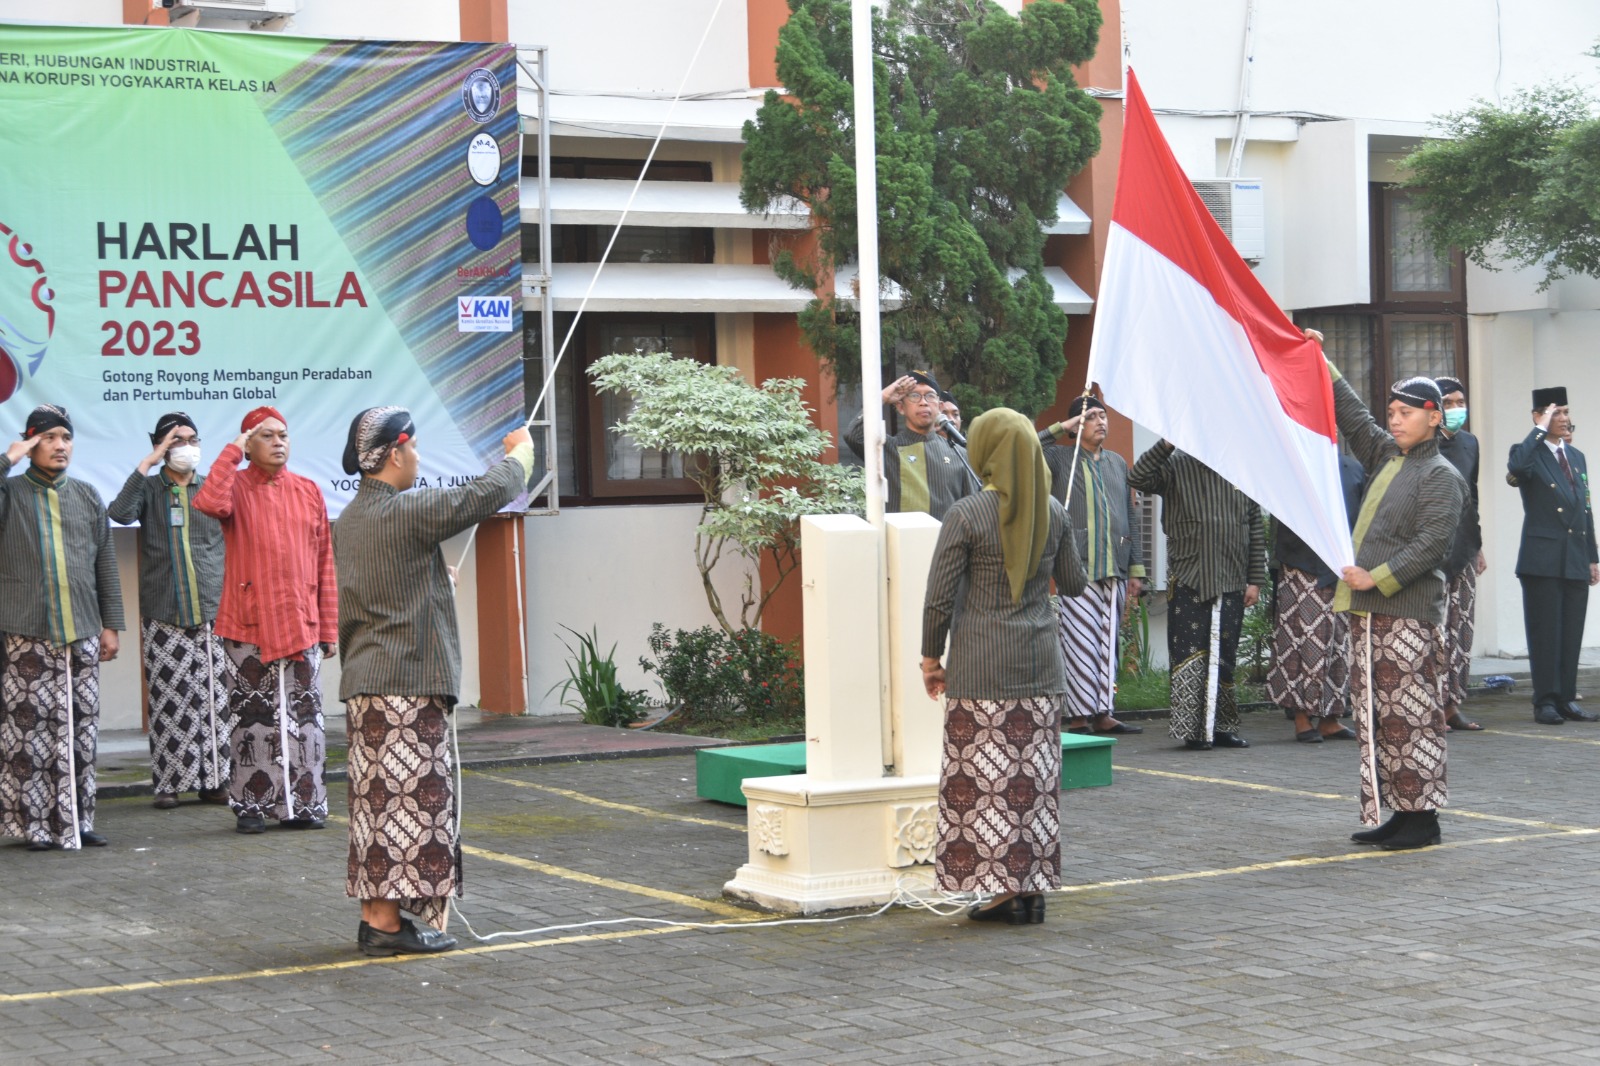 Pengadilan Negeri Yogyakarta Melaksanakan Upacara Peringatan Hari Lahir Pancasila 1 Juni 2023